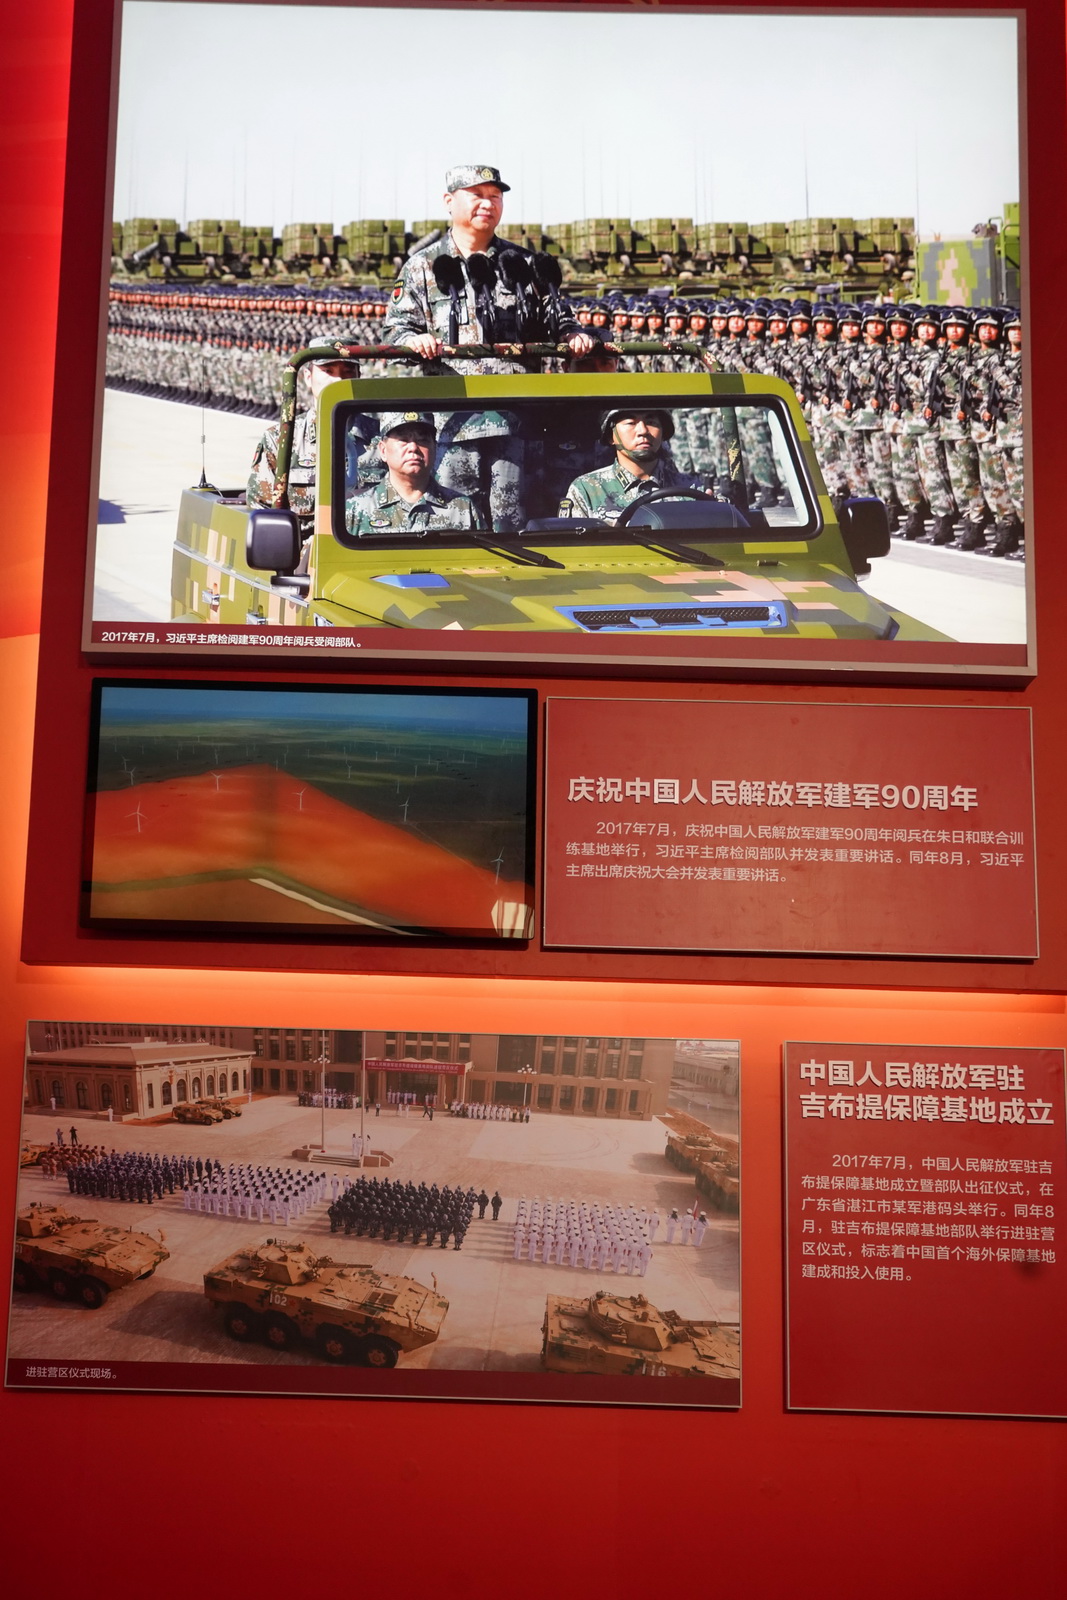 慶祝中國人民解放軍建軍90周年。